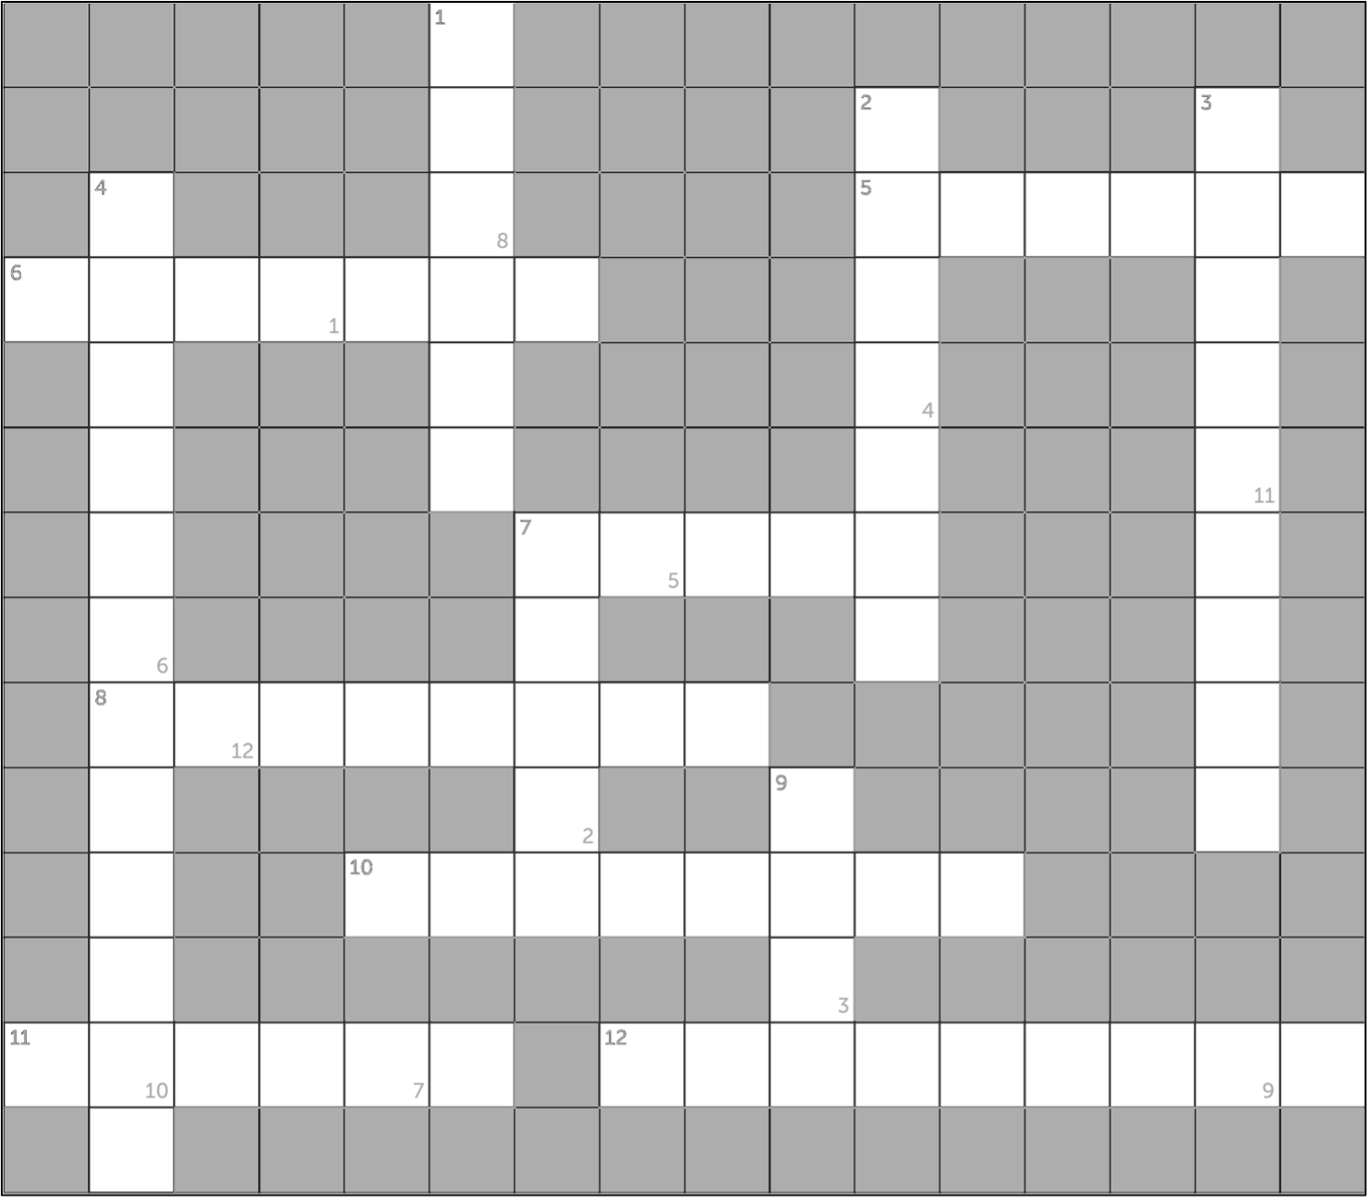 Krzyżówka puzzle online